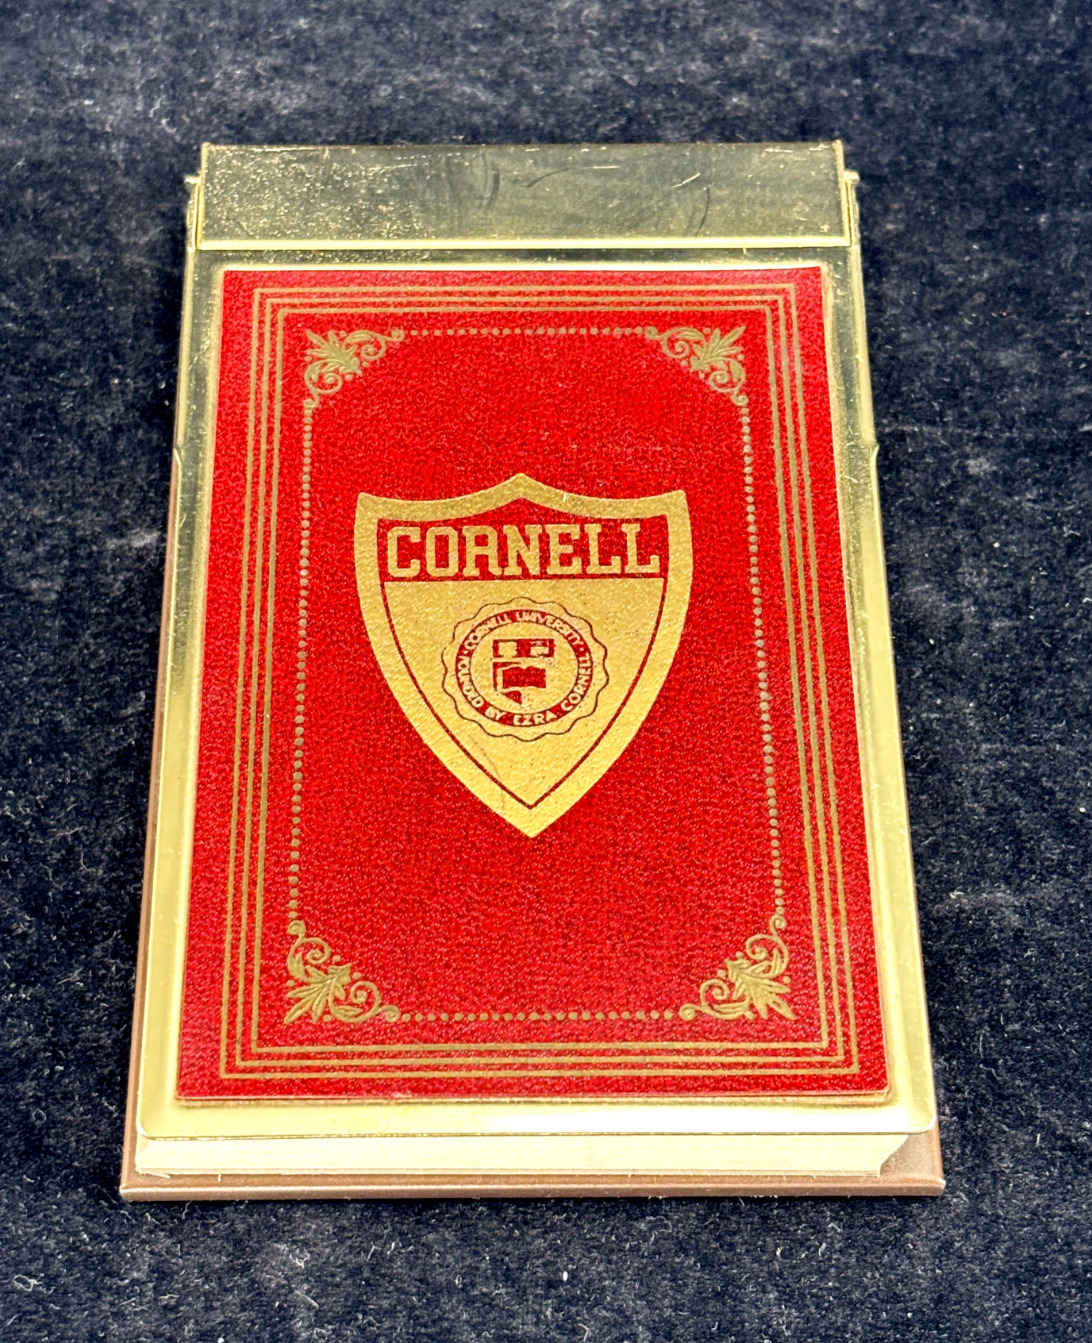 Vintage Cornell University Notepad or Memo Pad - Unused